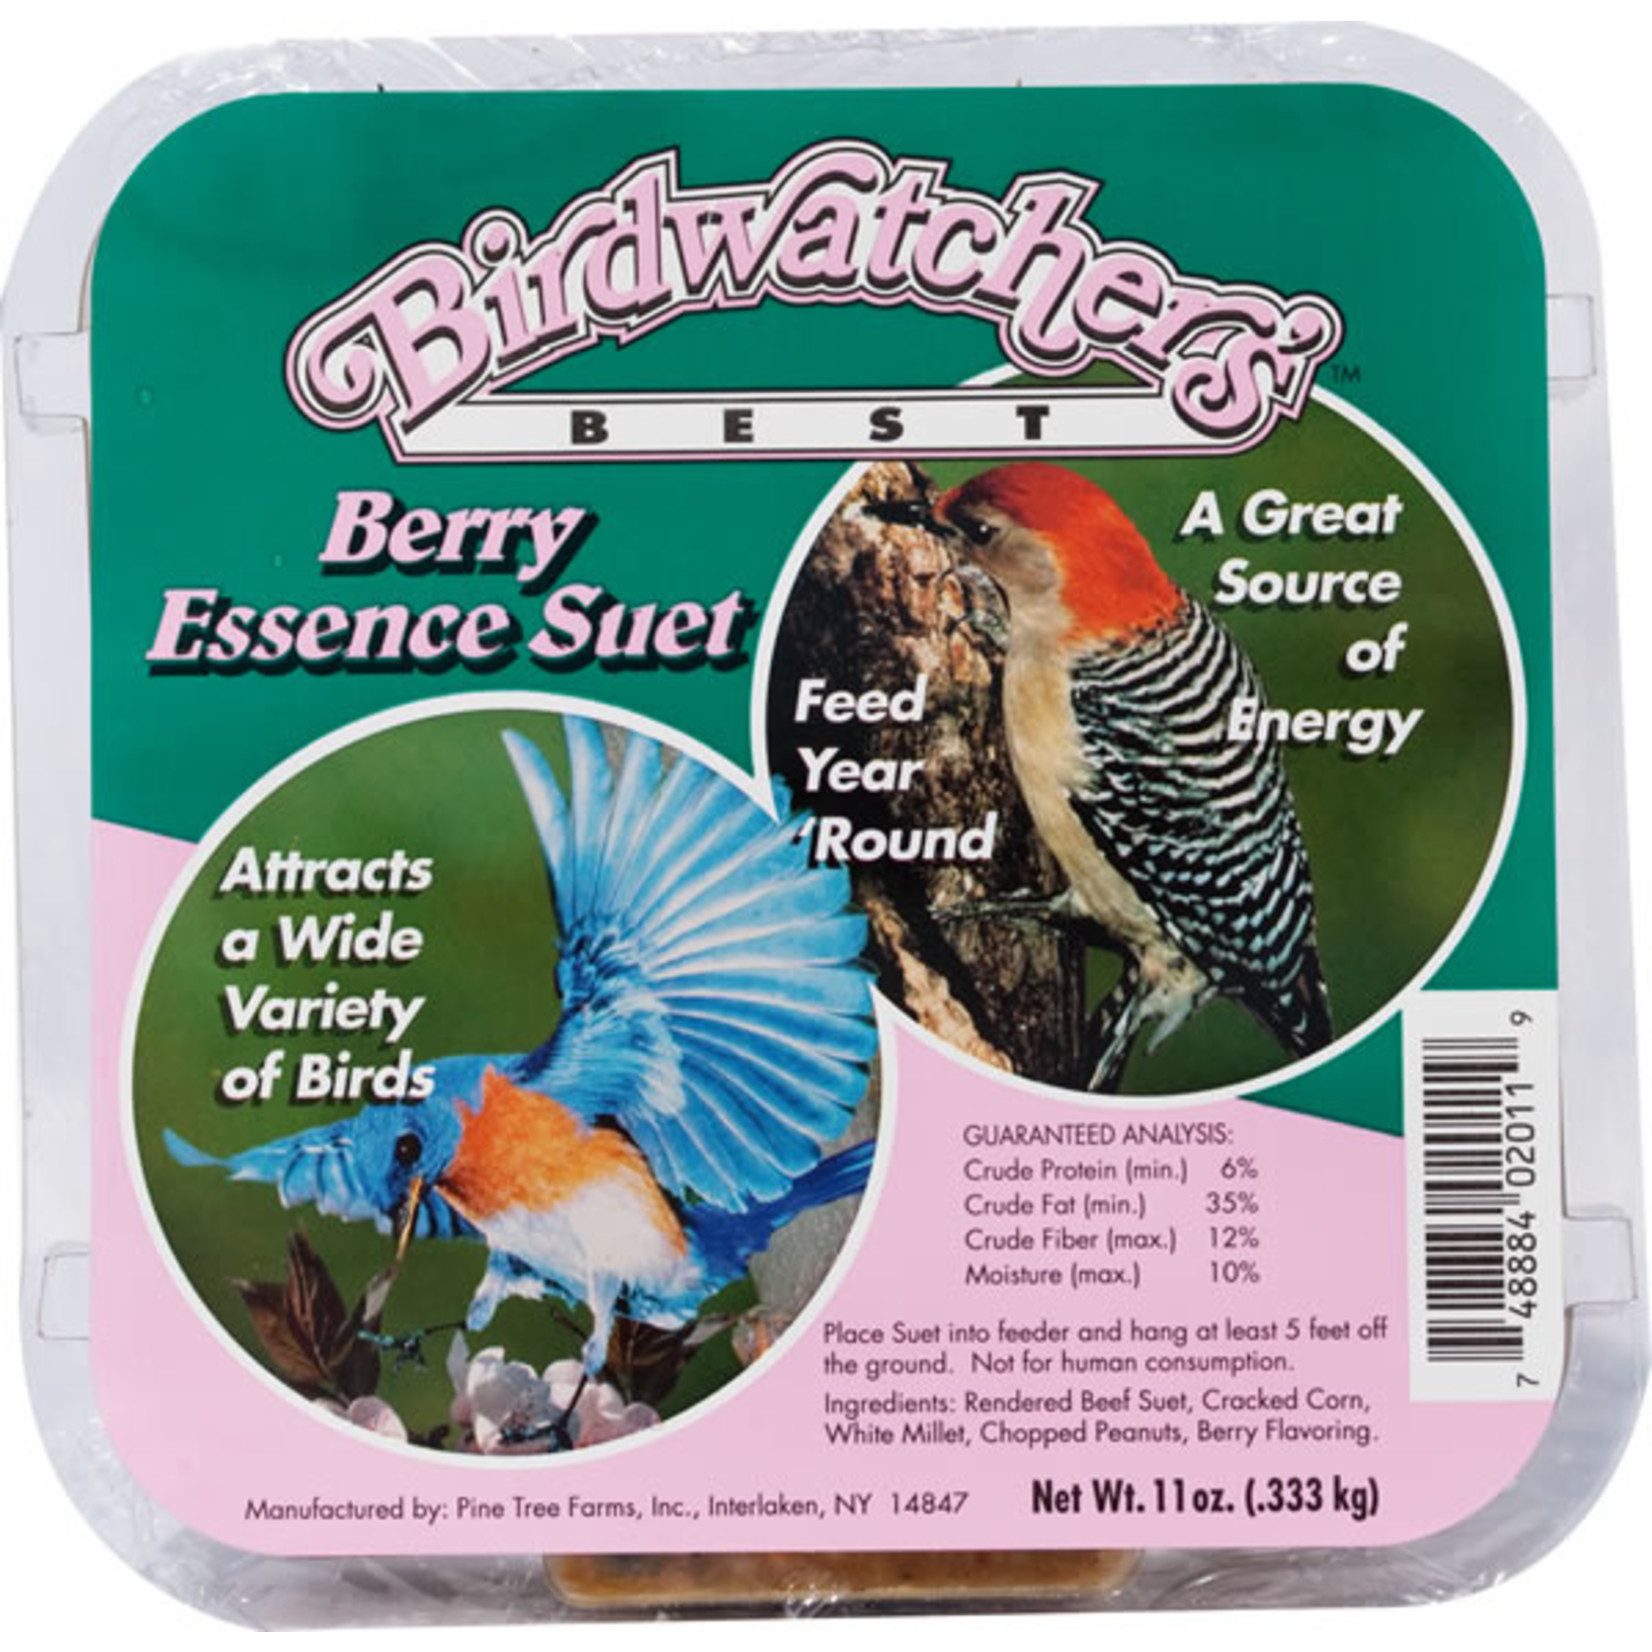 Birdwatchers Best Birdwatcher's Best Suet Berry Essence 11oz